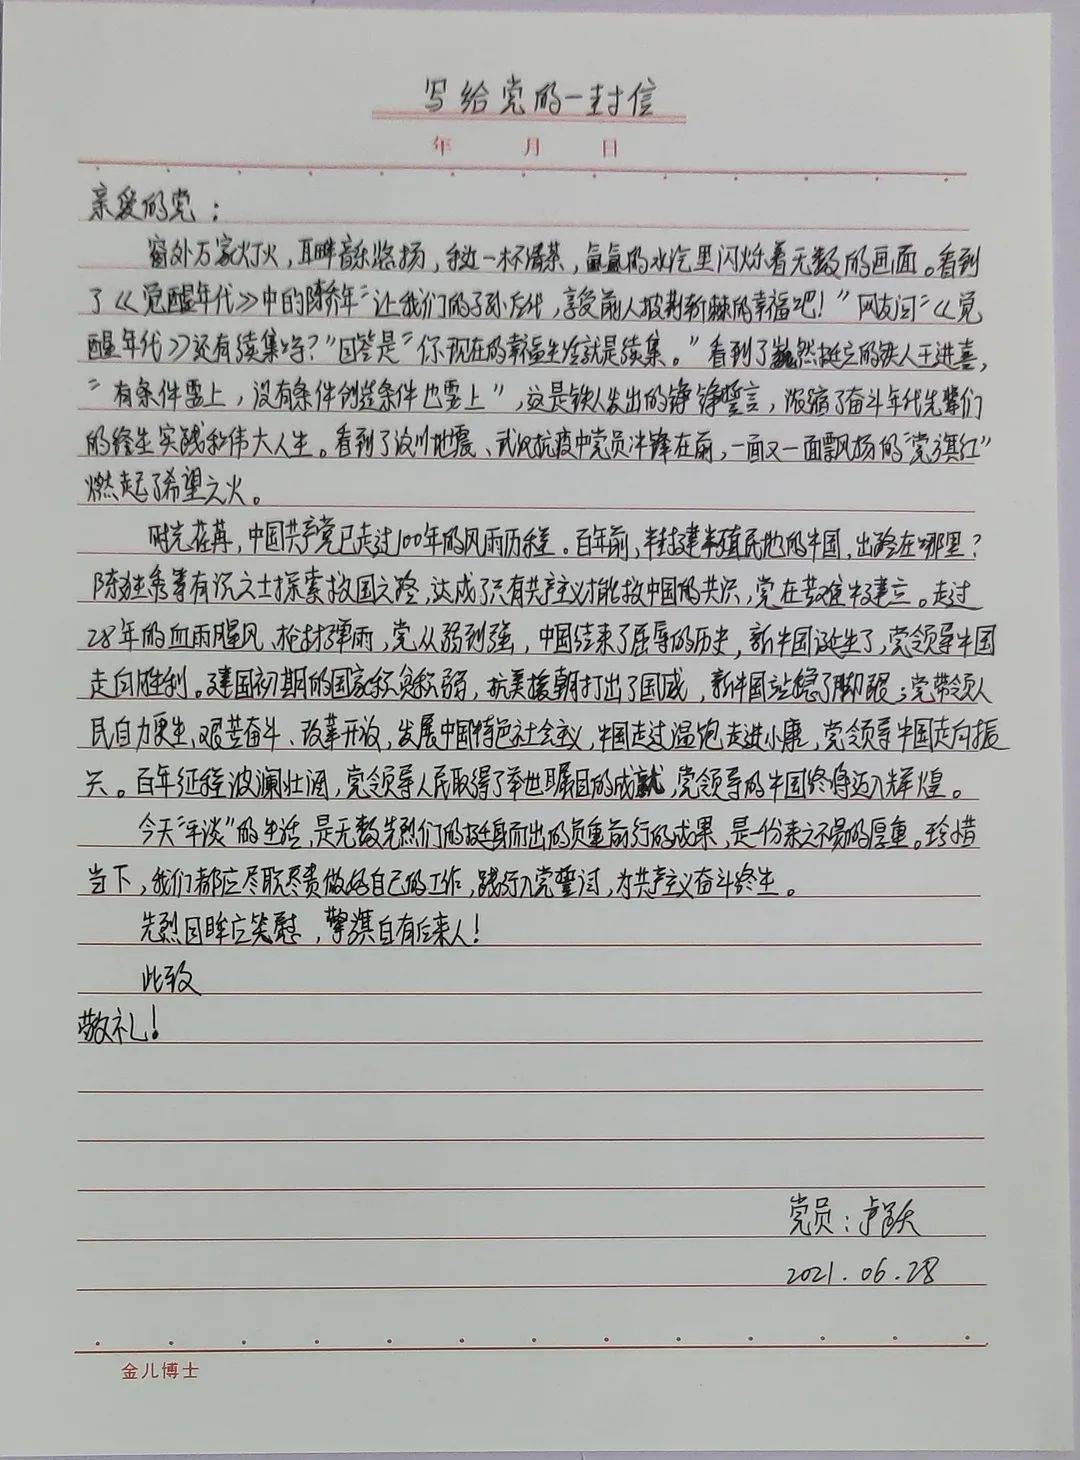 笔尖凝赤诚 书信庆华诞——第三技术部开展"写给党的一封信"活动